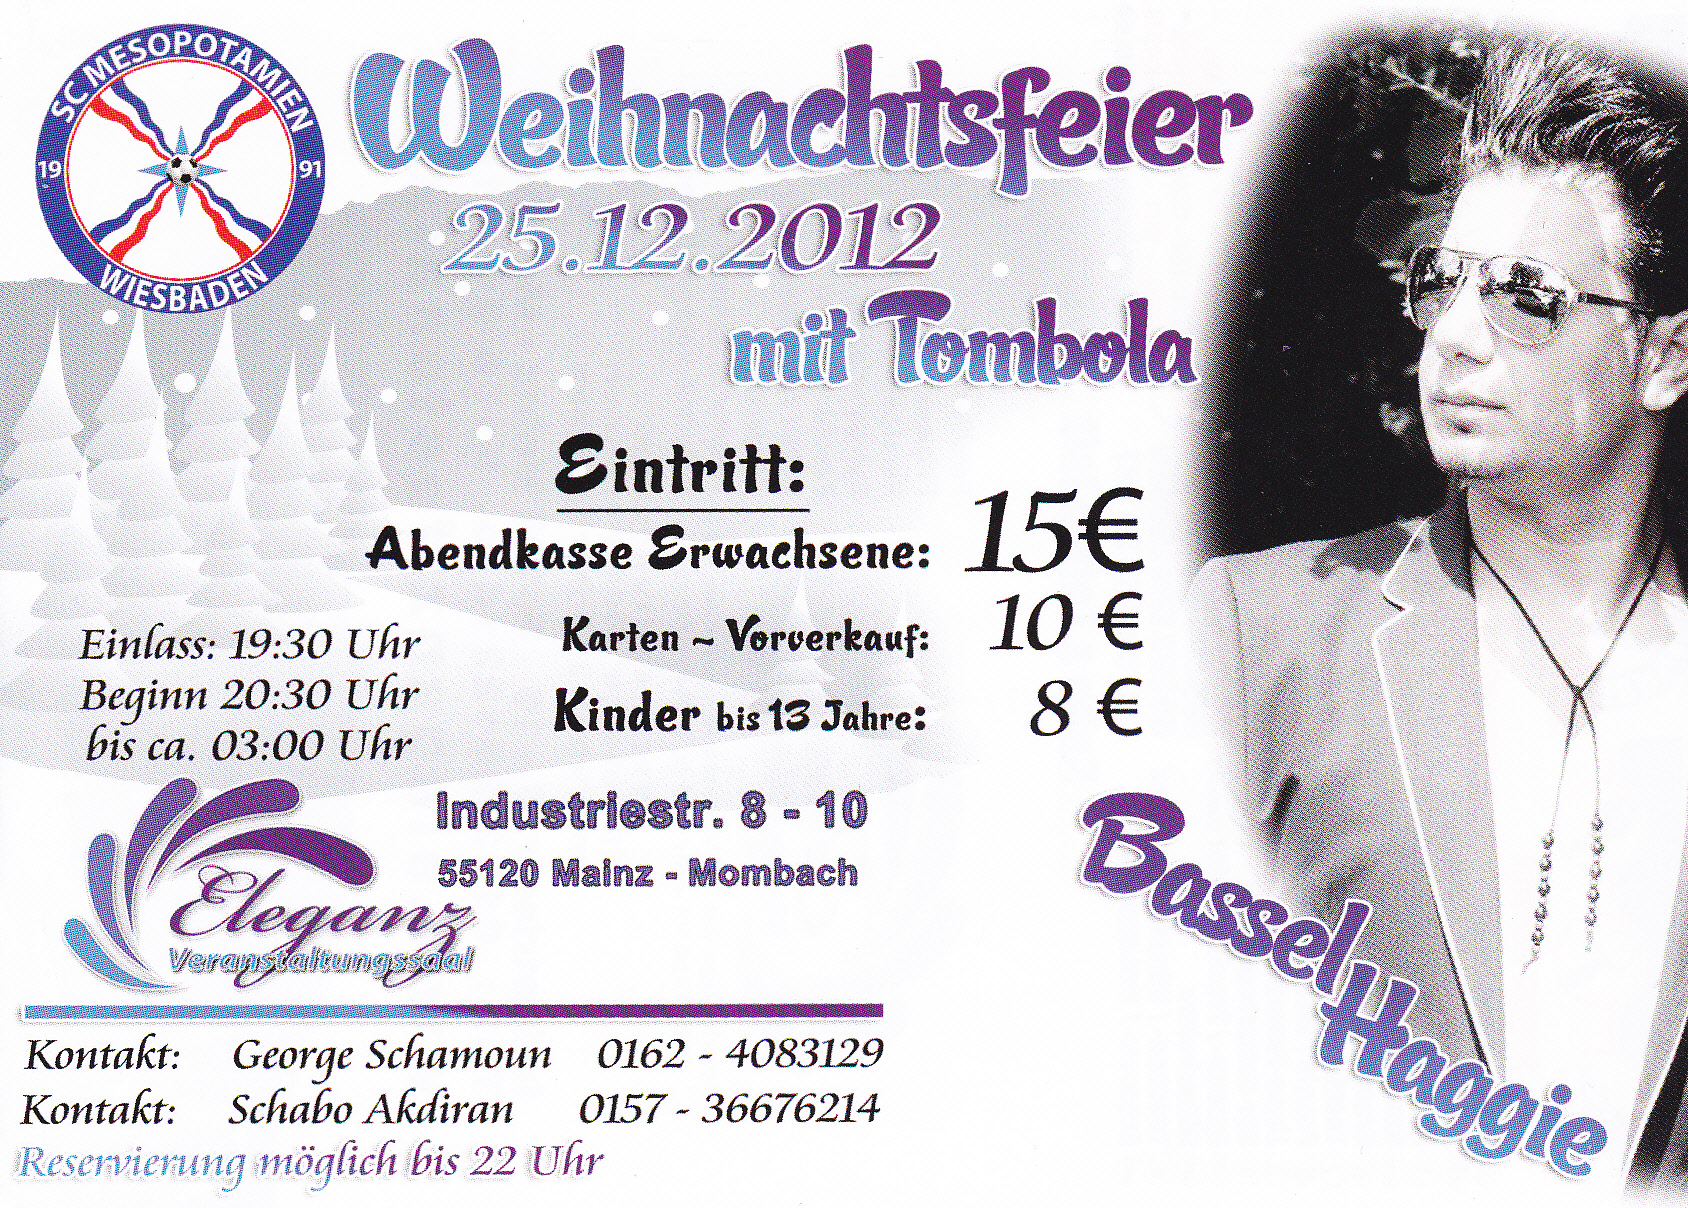 Wiesbadener Weihnachtshago 2012